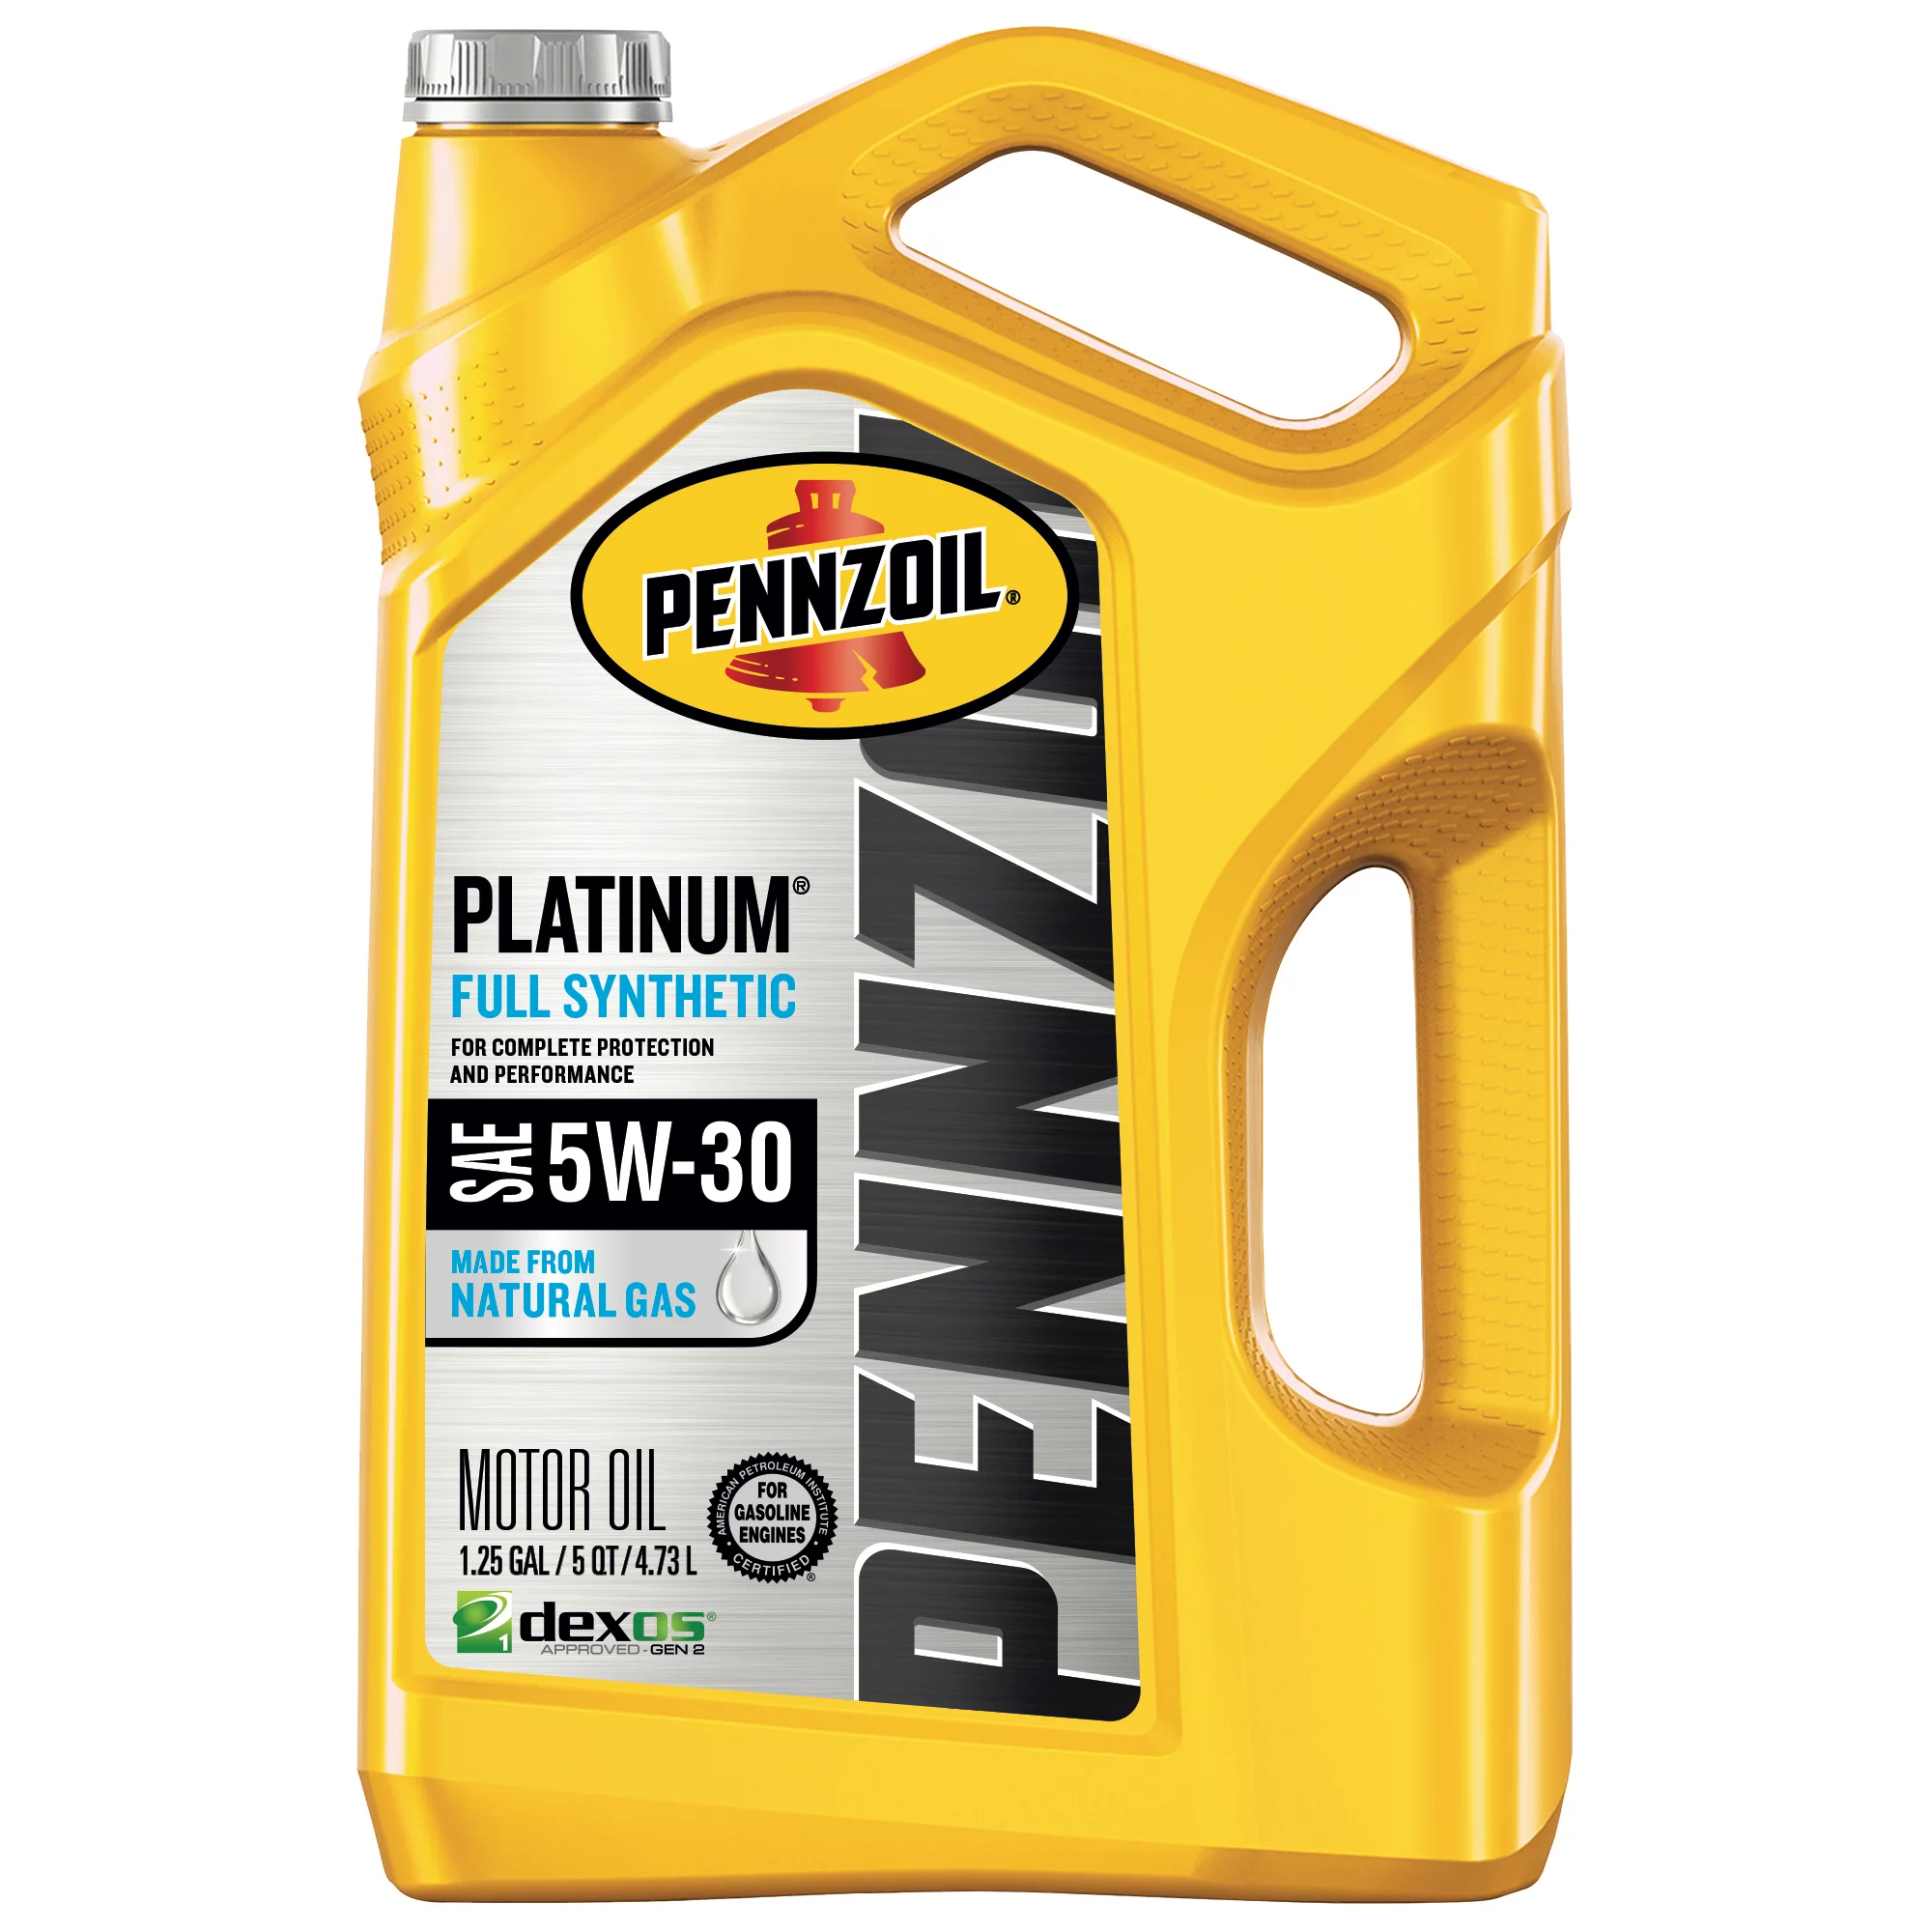 5W-30 Pennzoil Platinum Full Synthetic Motor Oil